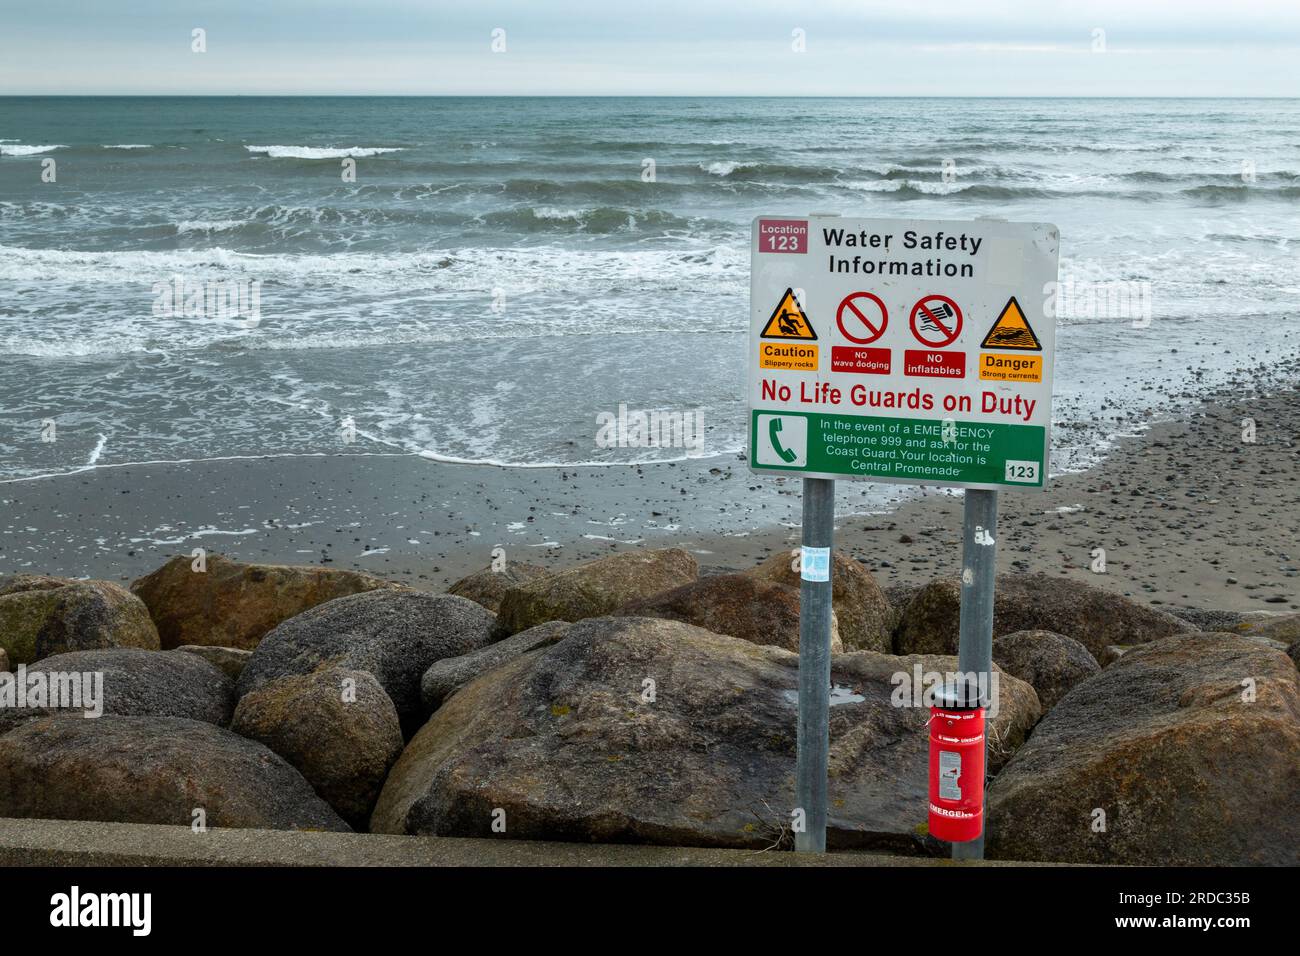 No hay guardias de vida en servicio, señal de seguridad de agua, Newcastle Beach, Co Down, Irlanda del Norte, Reino Unido Foto de stock